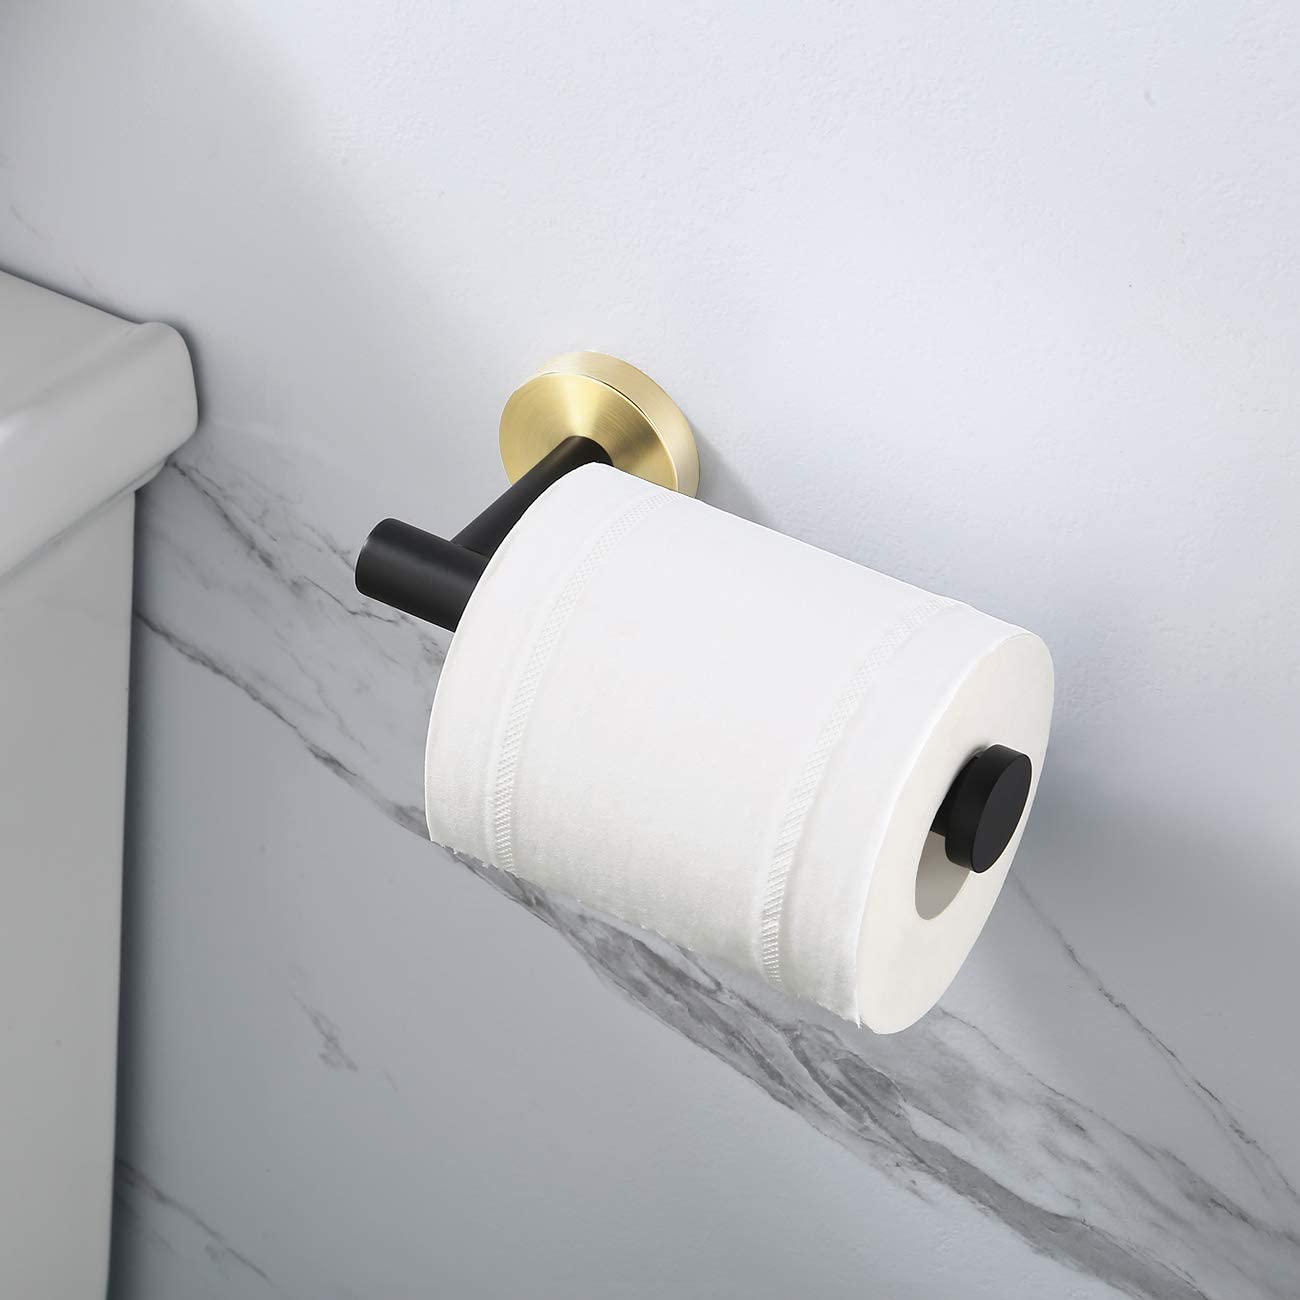 DW Straight 5 Chrome  Freestanding Toilet Paper Holder in